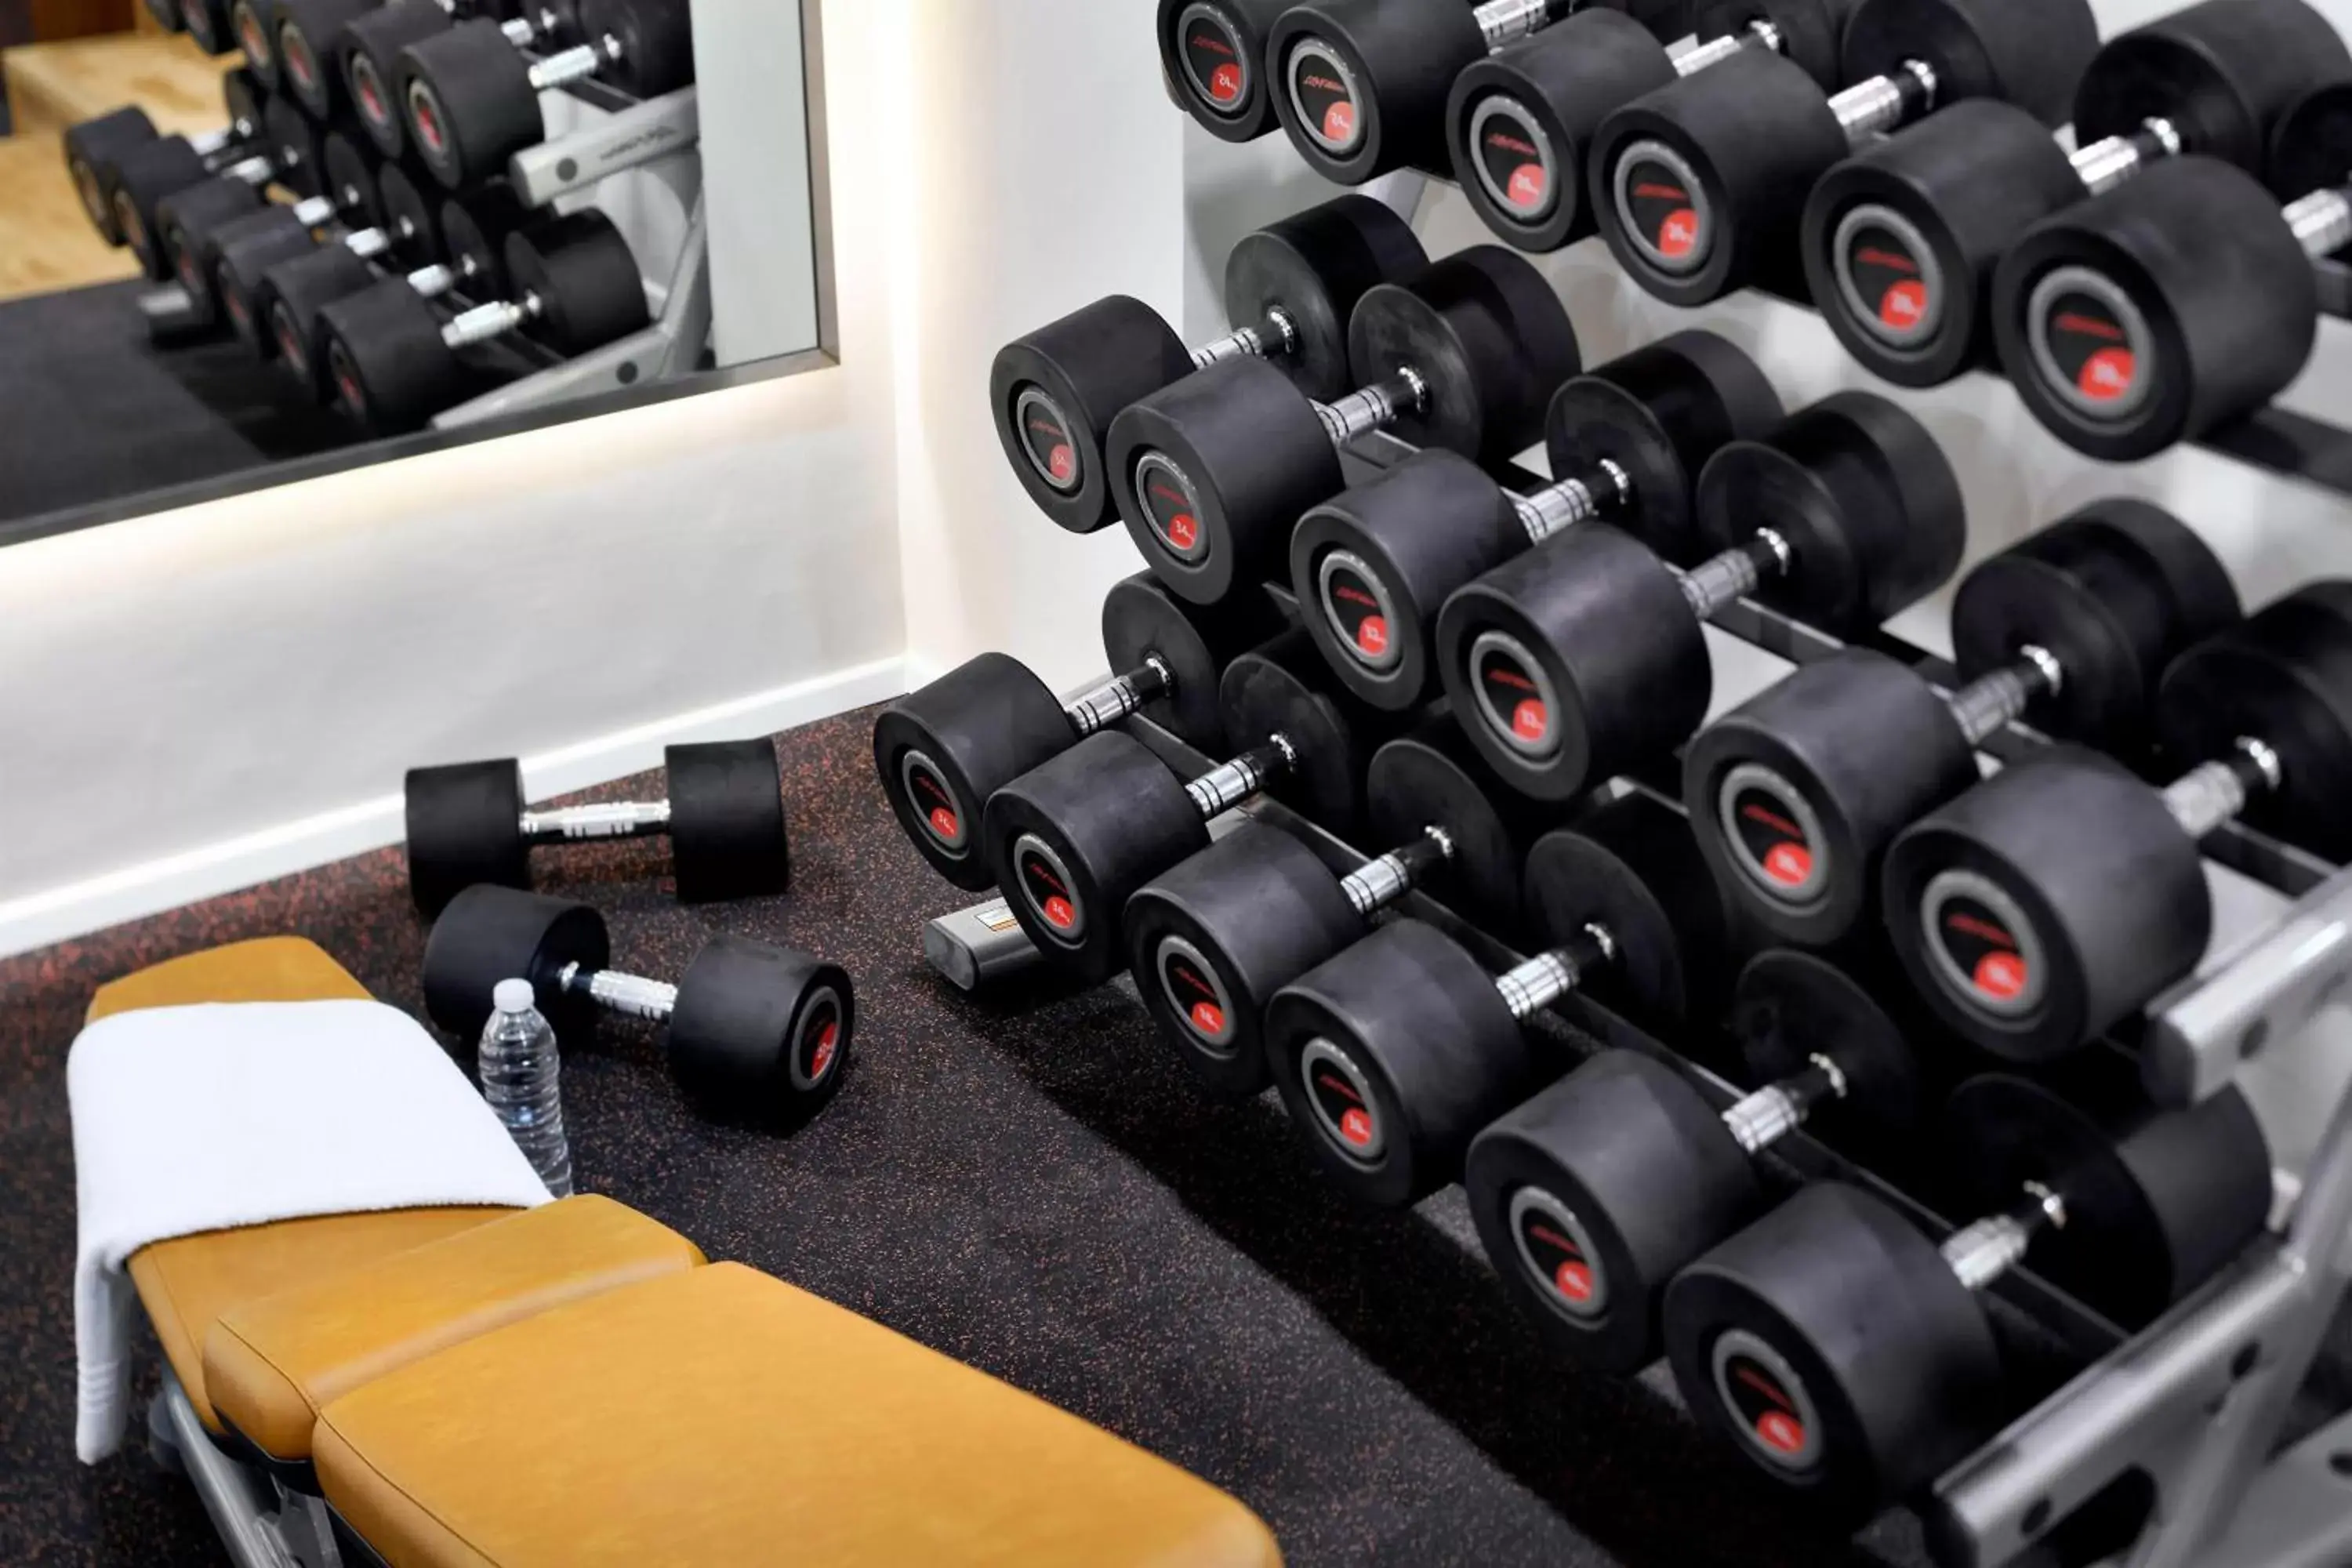 Fitness centre/facilities, Fitness Center/Facilities in Amman Marriott Hotel